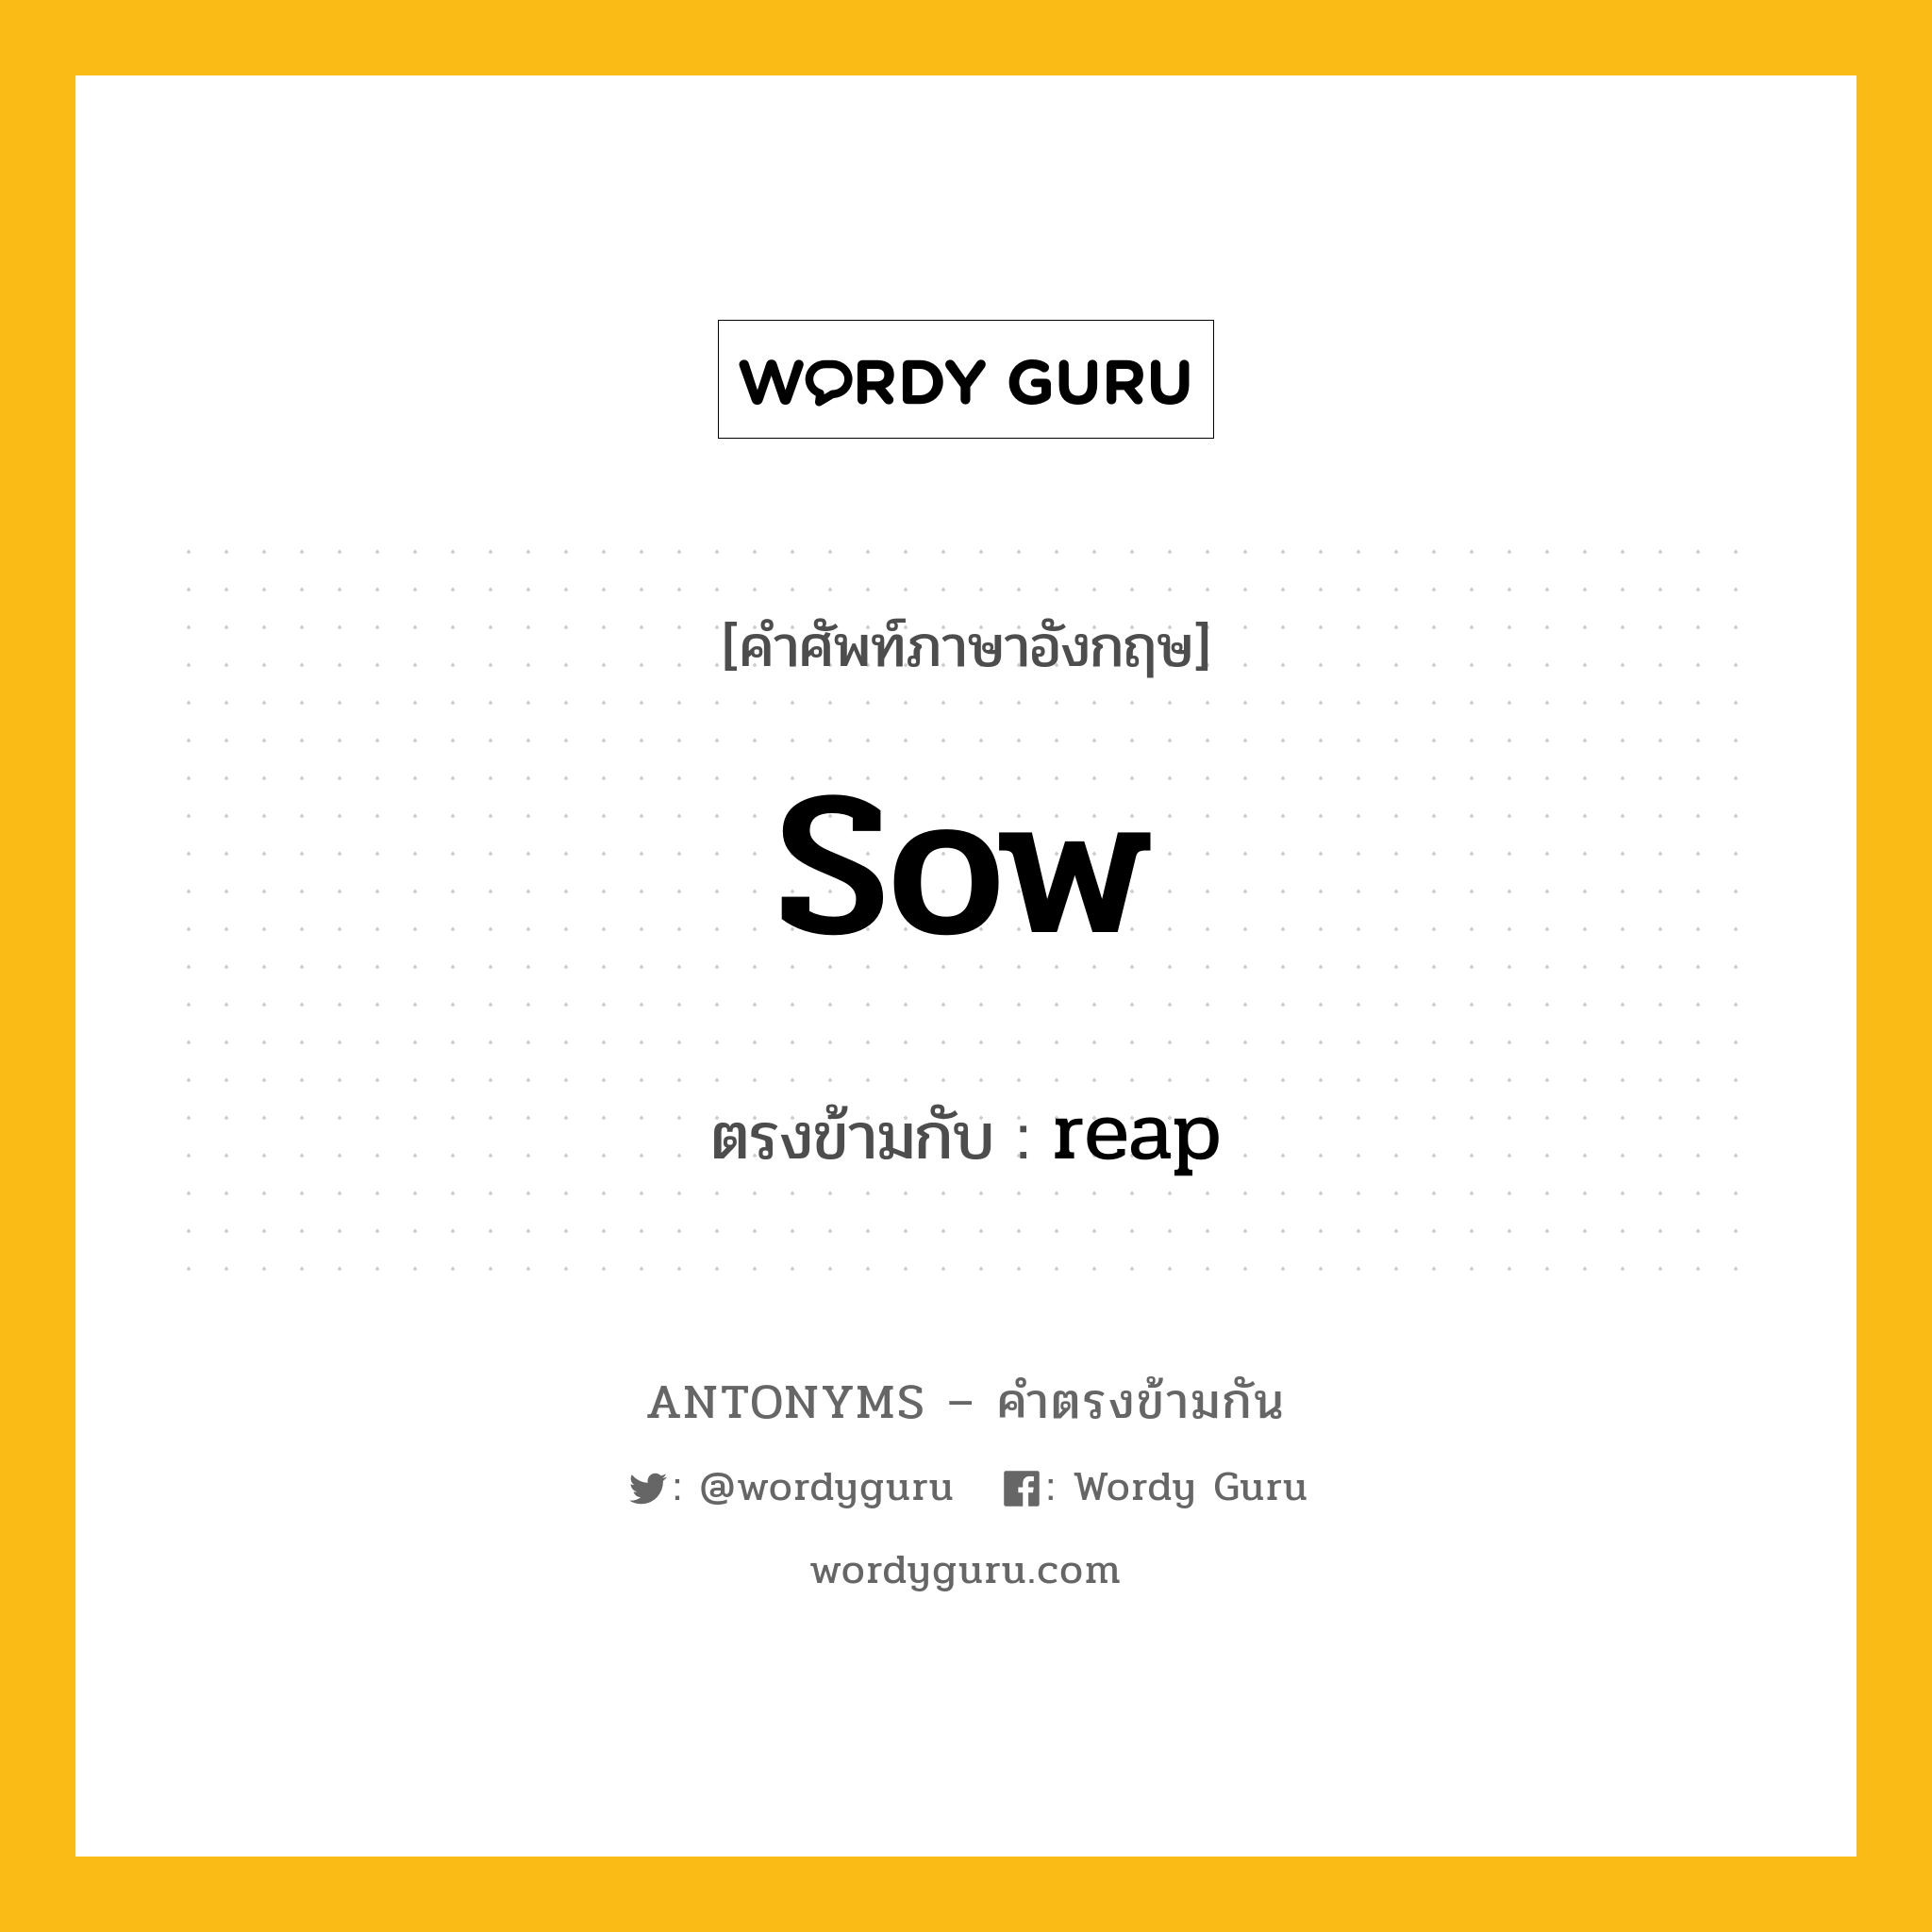 sow เป็นคำตรงข้ามกับคำไหนบ้าง?, คำศัพท์ภาษาอังกฤษ sow ตรงข้ามกับ reap หมวด reap